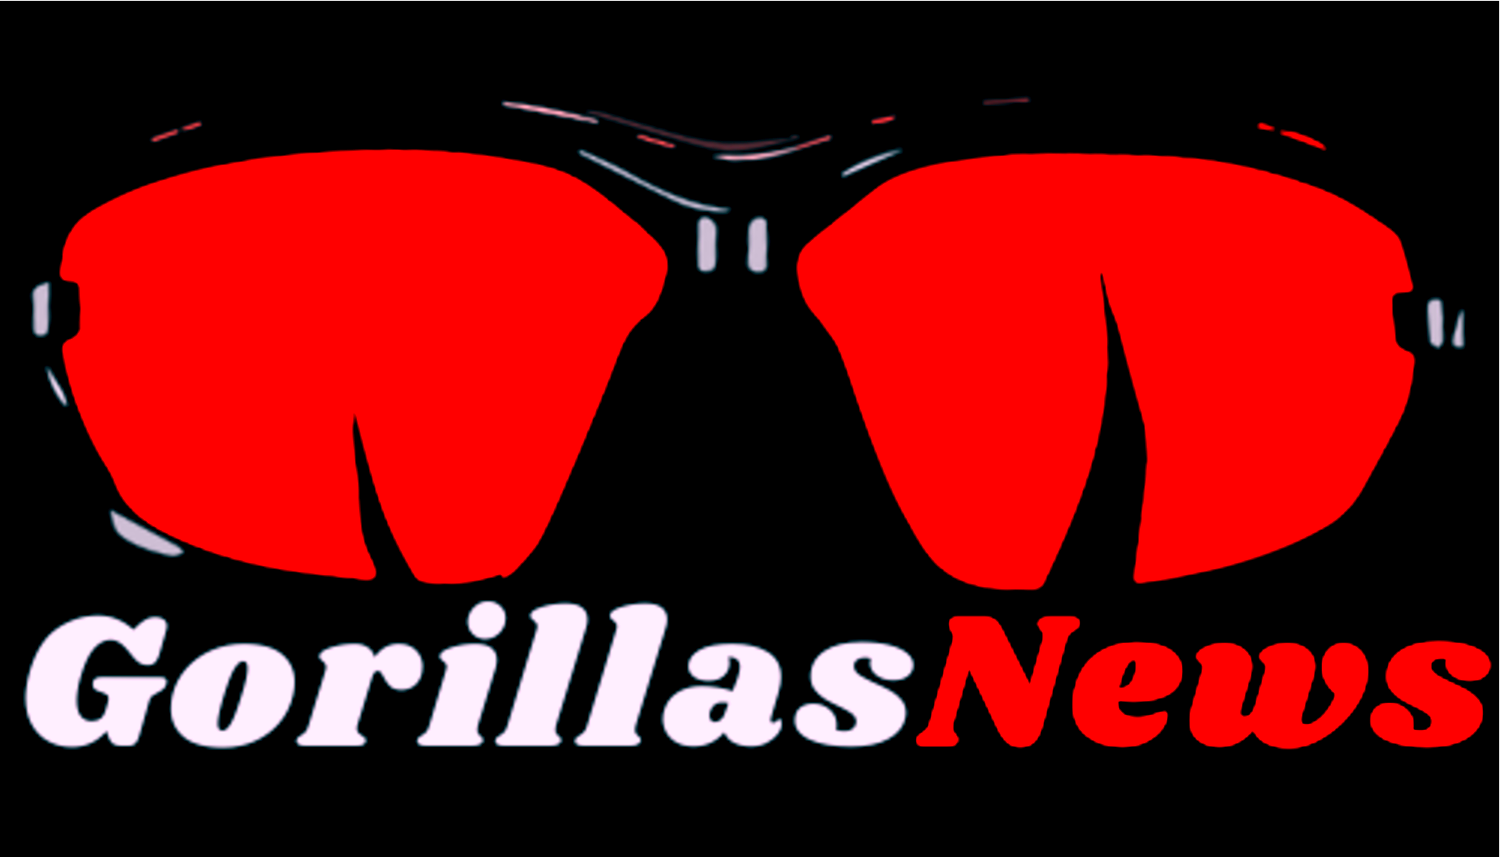 GorillasNews -  Os Maiores Jornais do Mundo